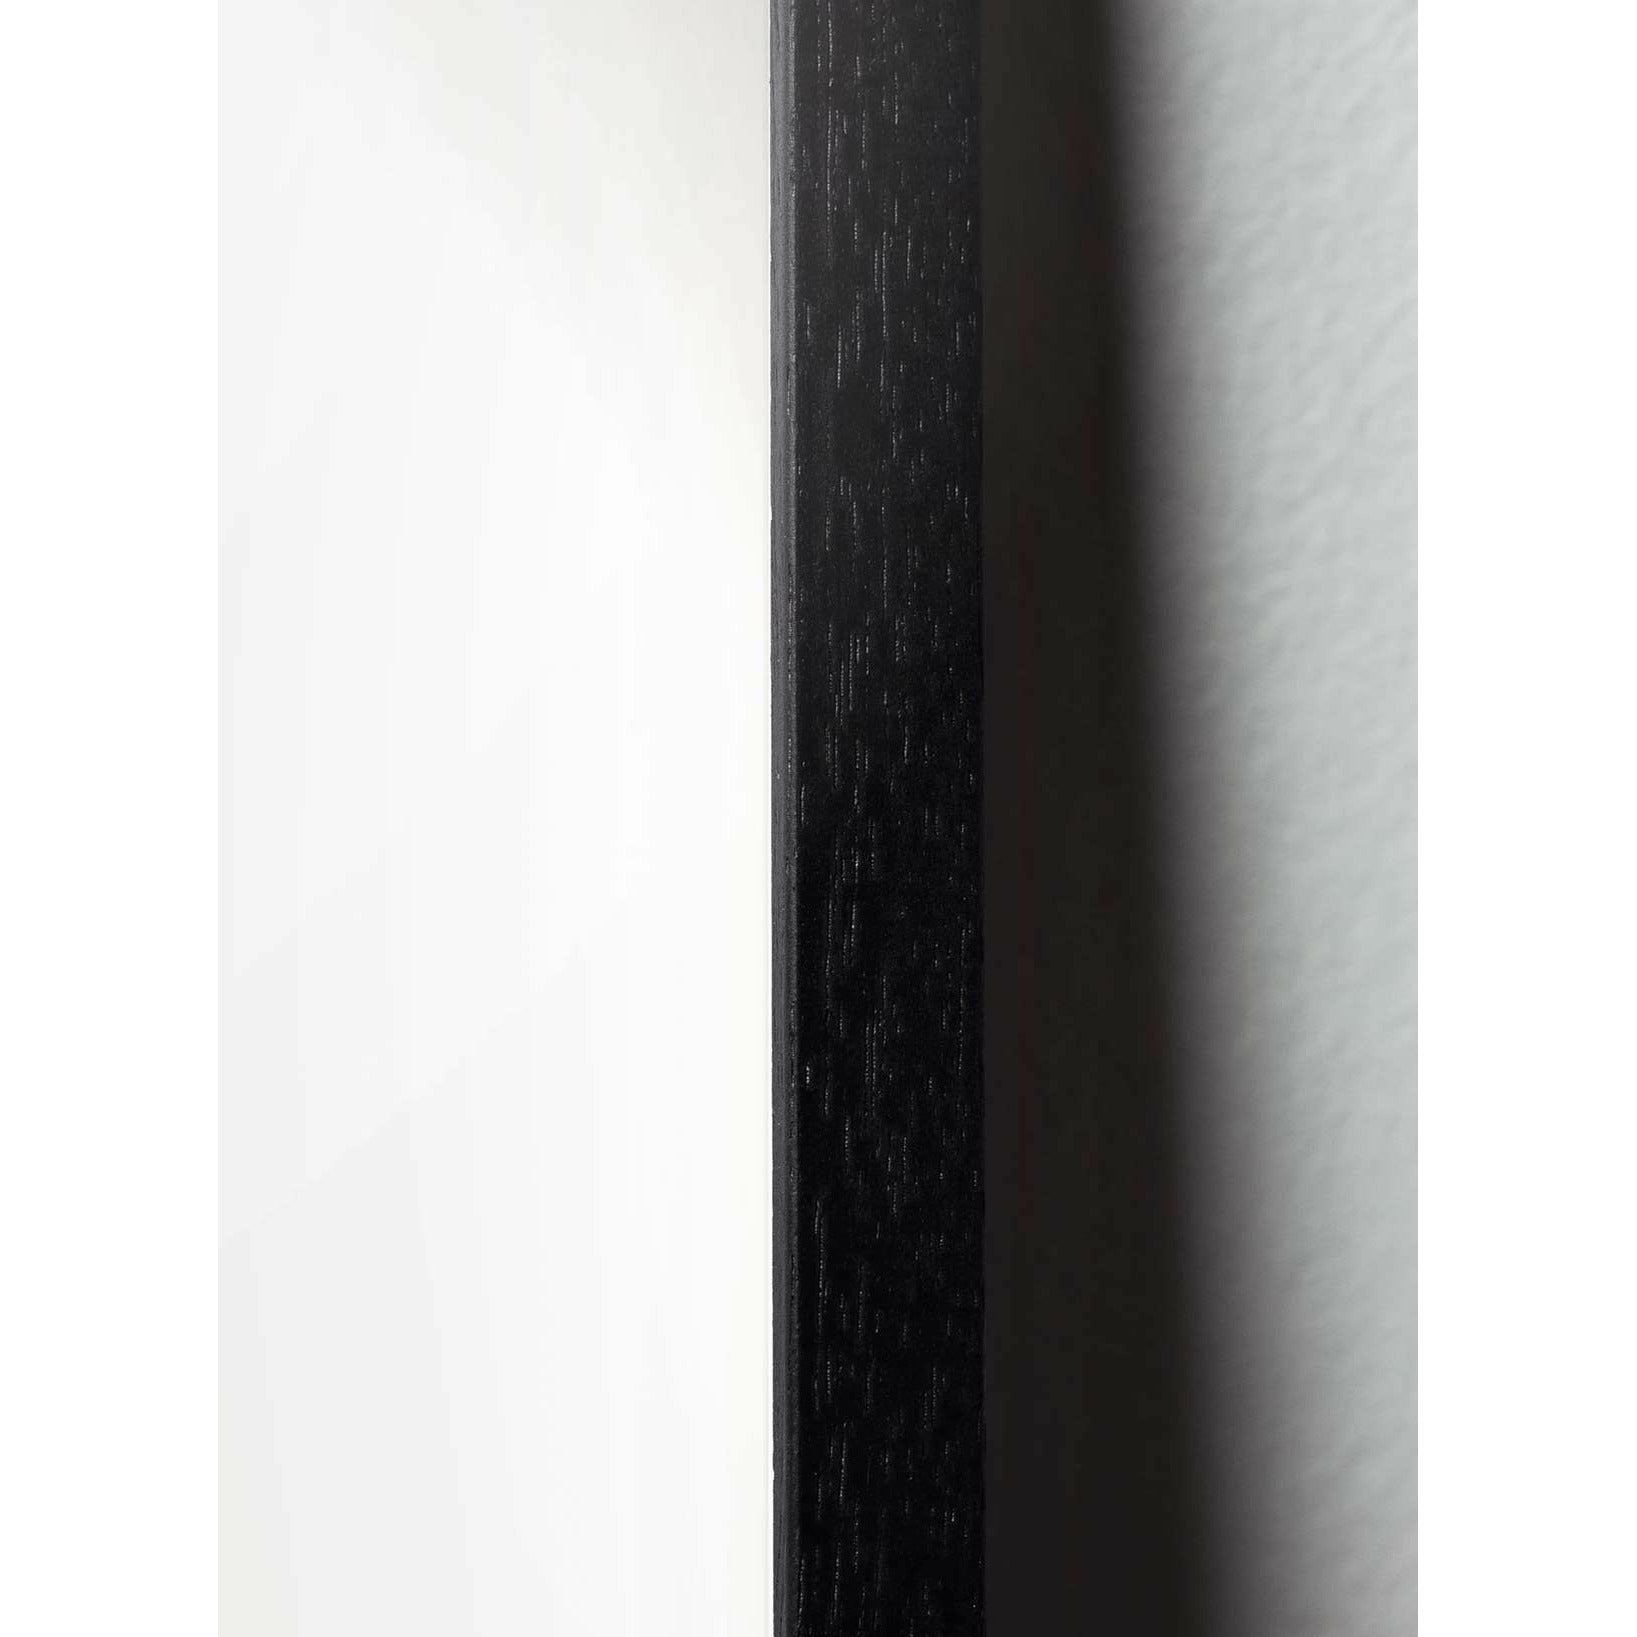 Póster clásico de BrainChild Flowerpot, marco hecho de madera lacada negra de 30x40 cm, fondo azul oscuro